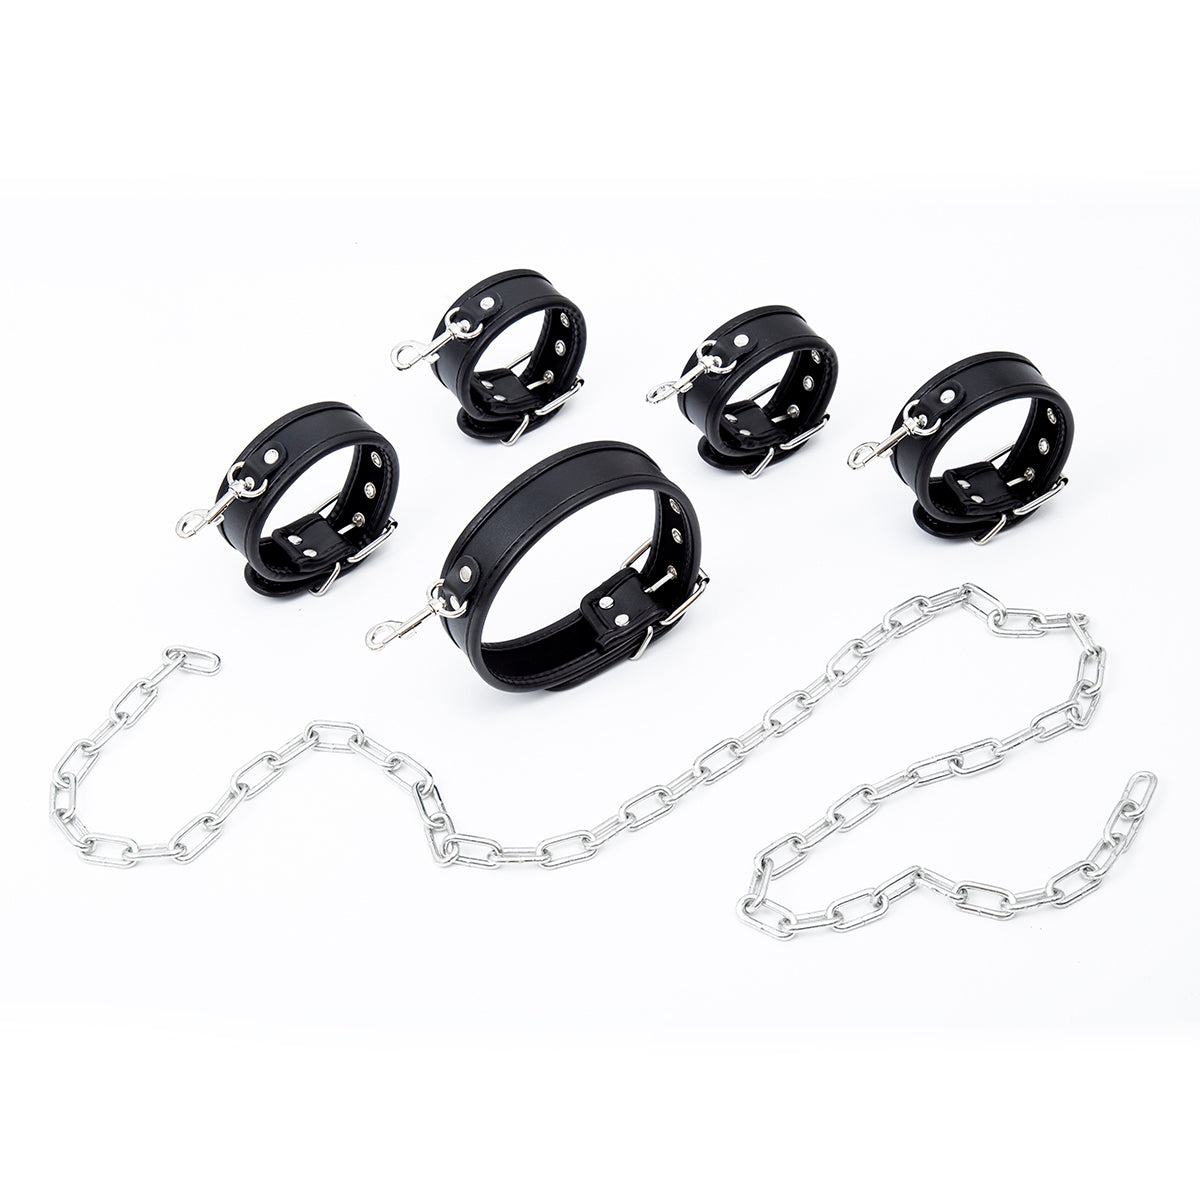 Halsband, Hand- und Fußfesseln-Set inklusive 1 Meter Kette in Schwarz/Silber